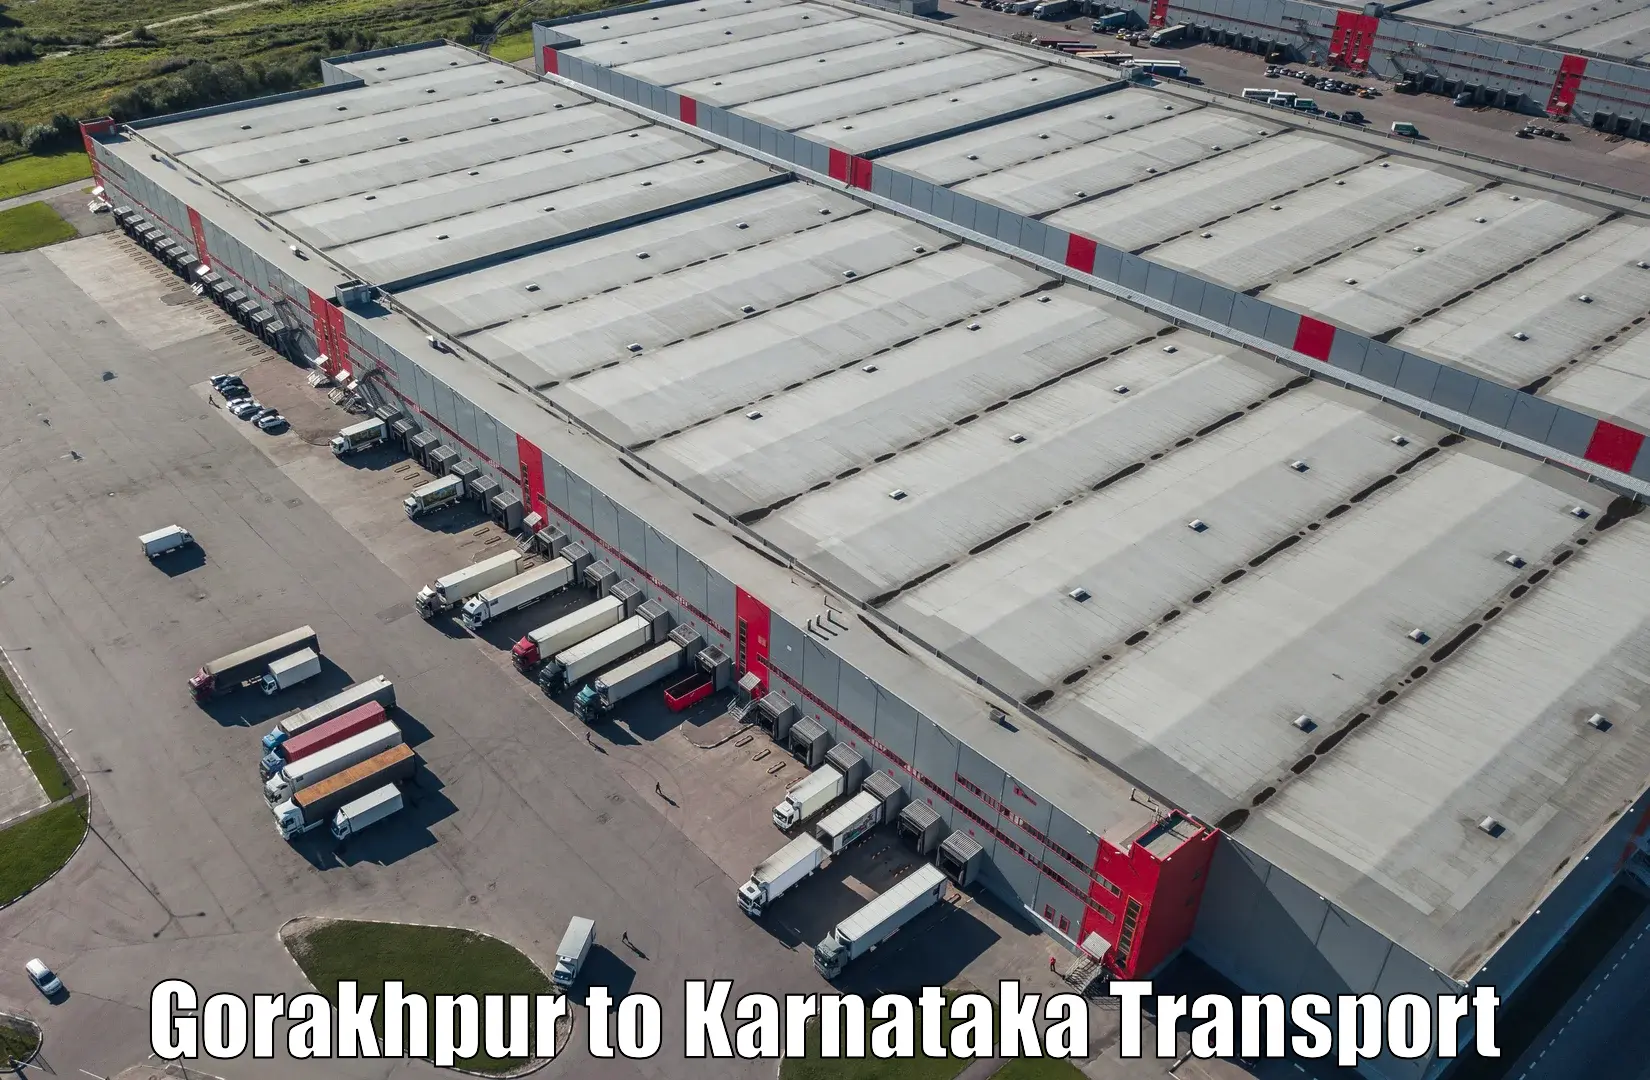 Logistics transportation services Gorakhpur to Yenepoya Mangalore